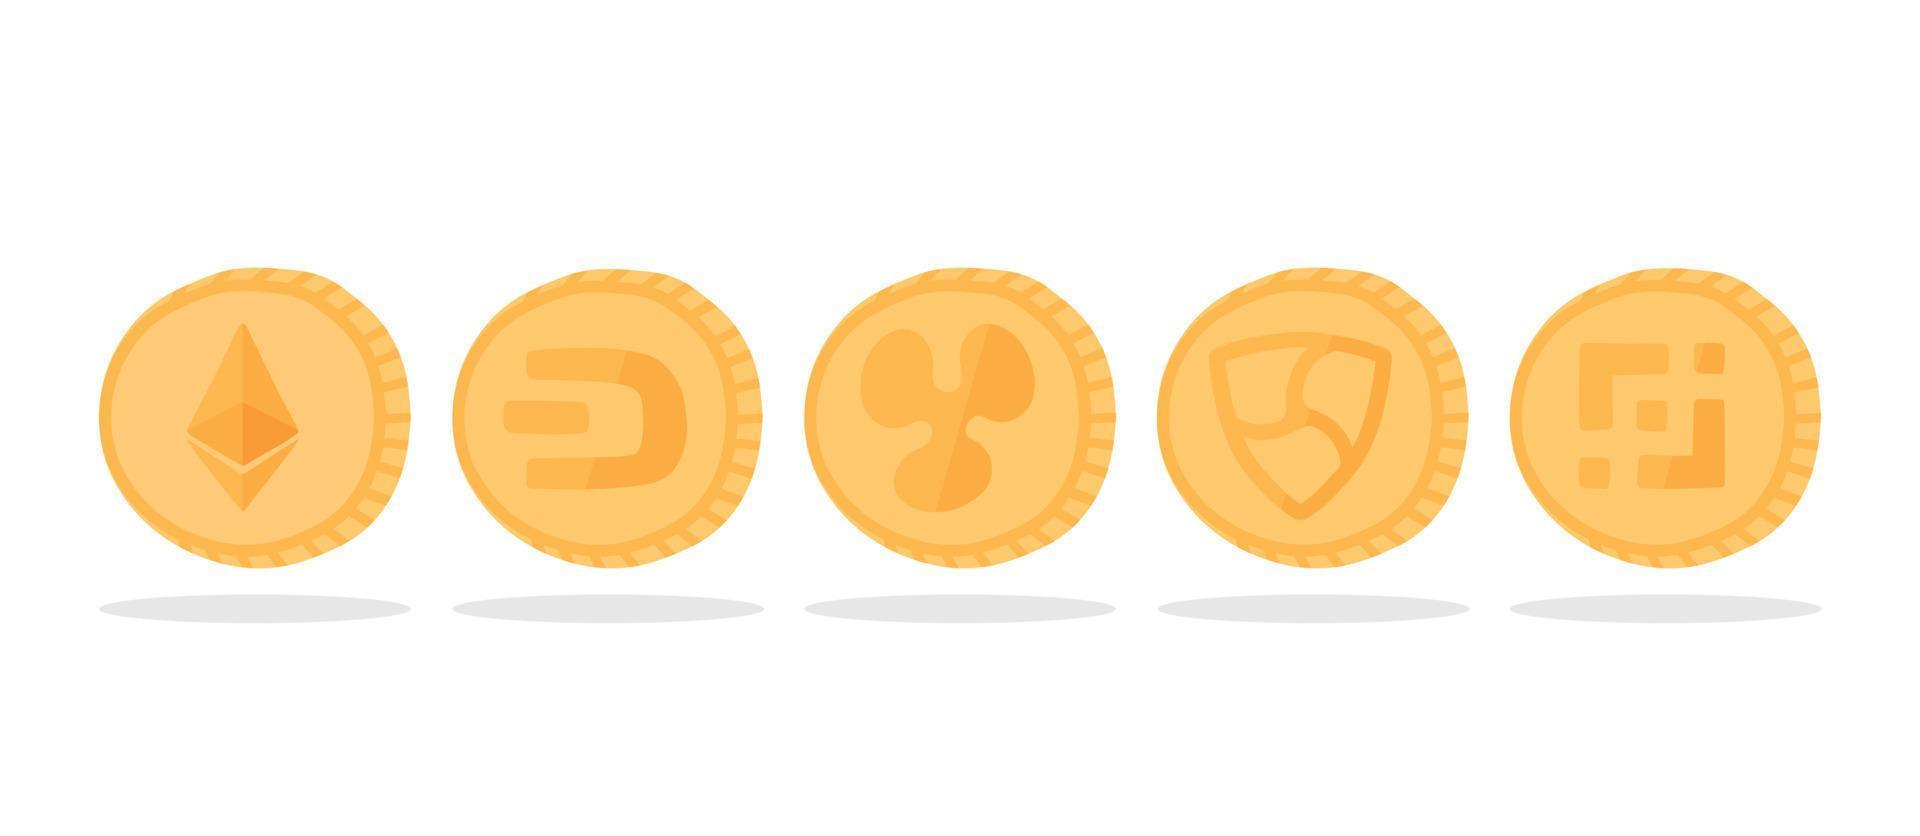 una serie di loghi di criptovaluta: ethereum, ripple, dash, nem, binance coin. monete d'oro con un simbolo di criptovaluta. vettore